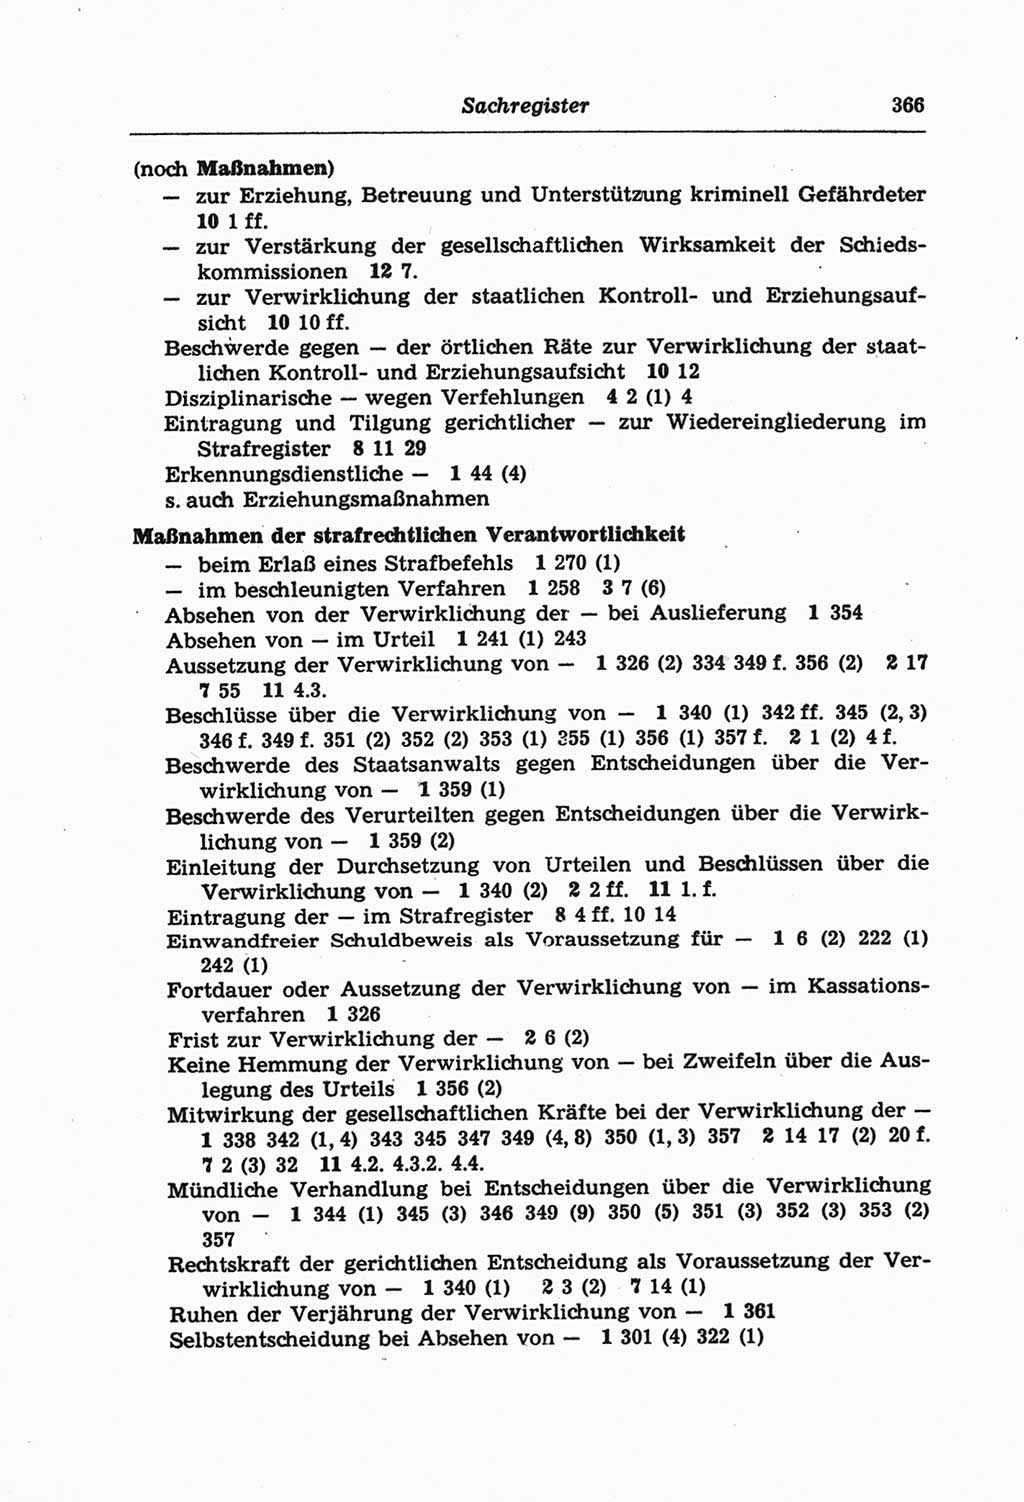 Strafprozeßordnung (StPO) der Deutschen Demokratischen Republik (DDR) und angrenzende Gesetze und Bestimmungen 1968, Seite 366 (StPO Ges. Bstgn. DDR 1968, S. 366)